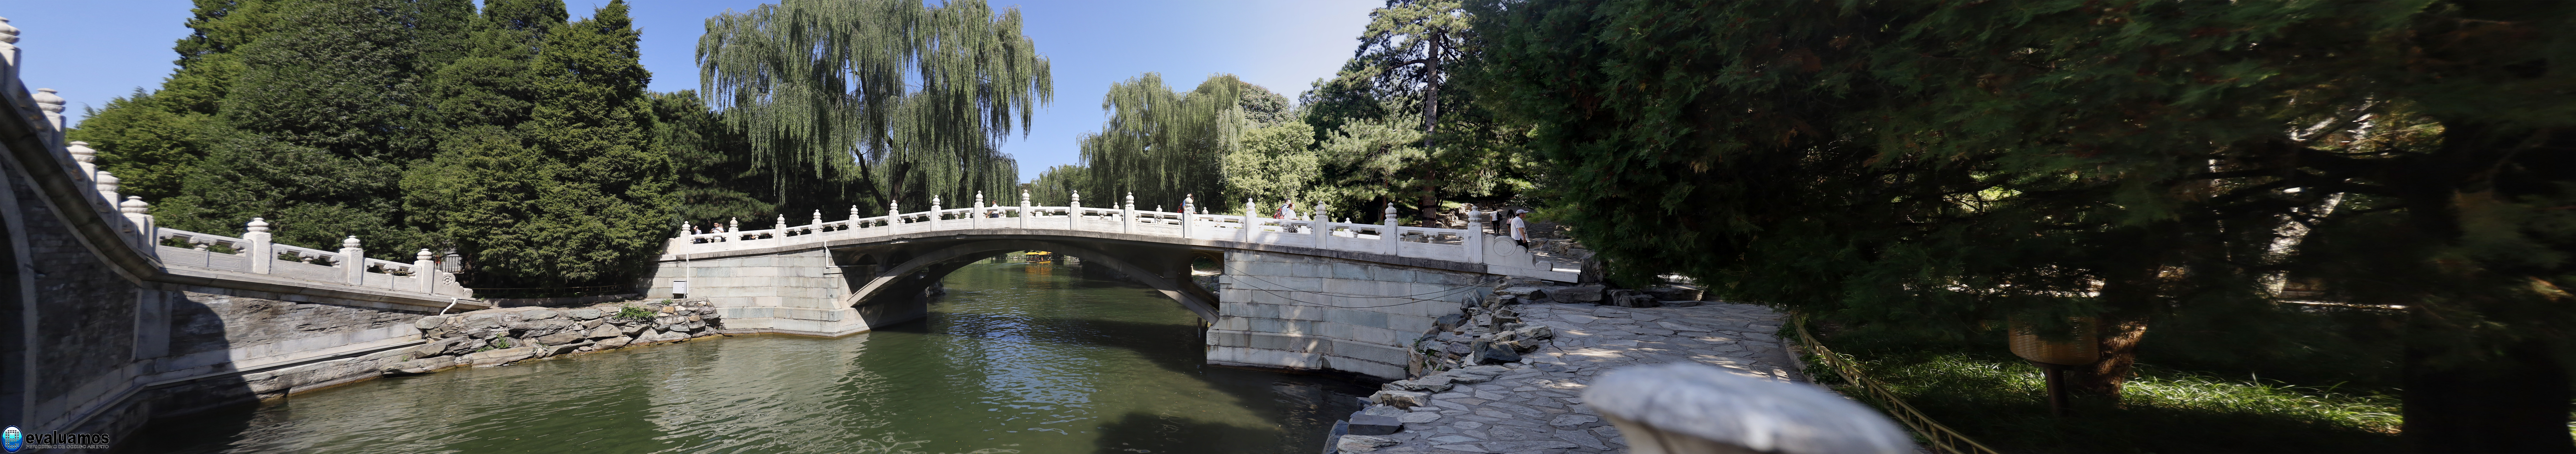 Fotografía del día – tres fotos unidas de dos antiguos puentes chino